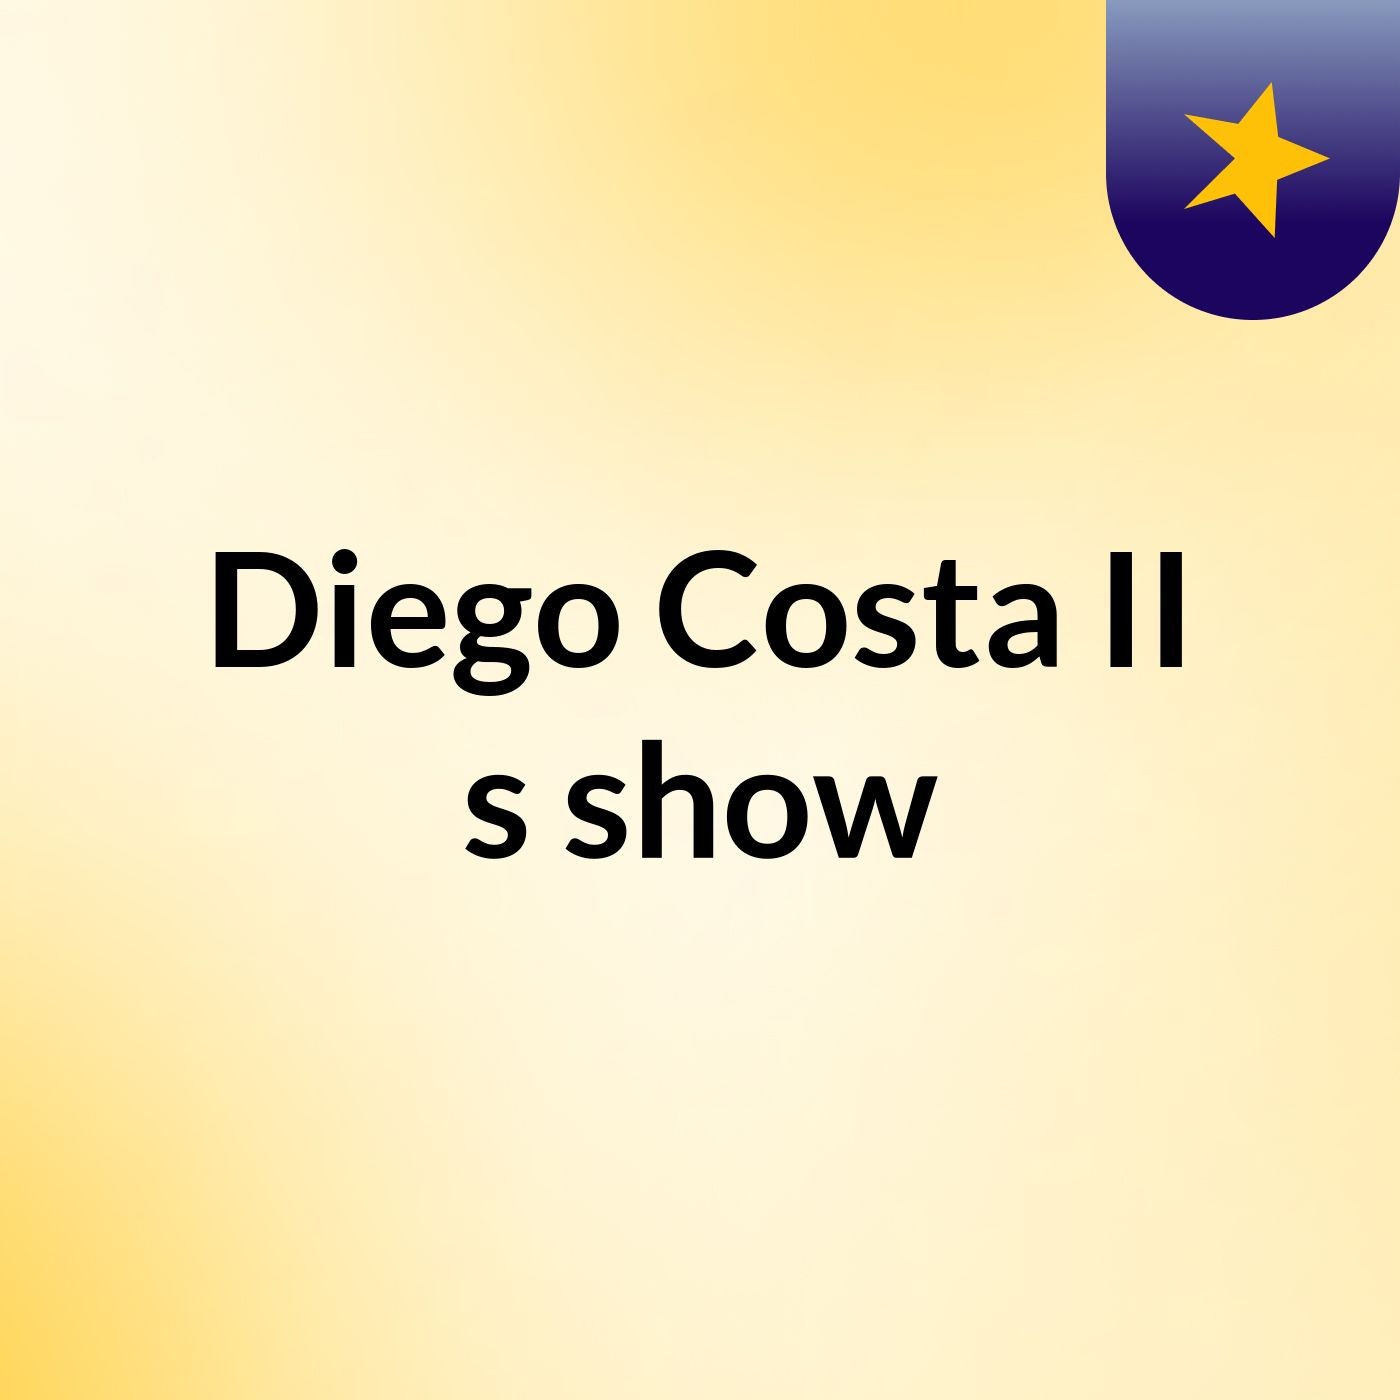 Diego Costa II's show